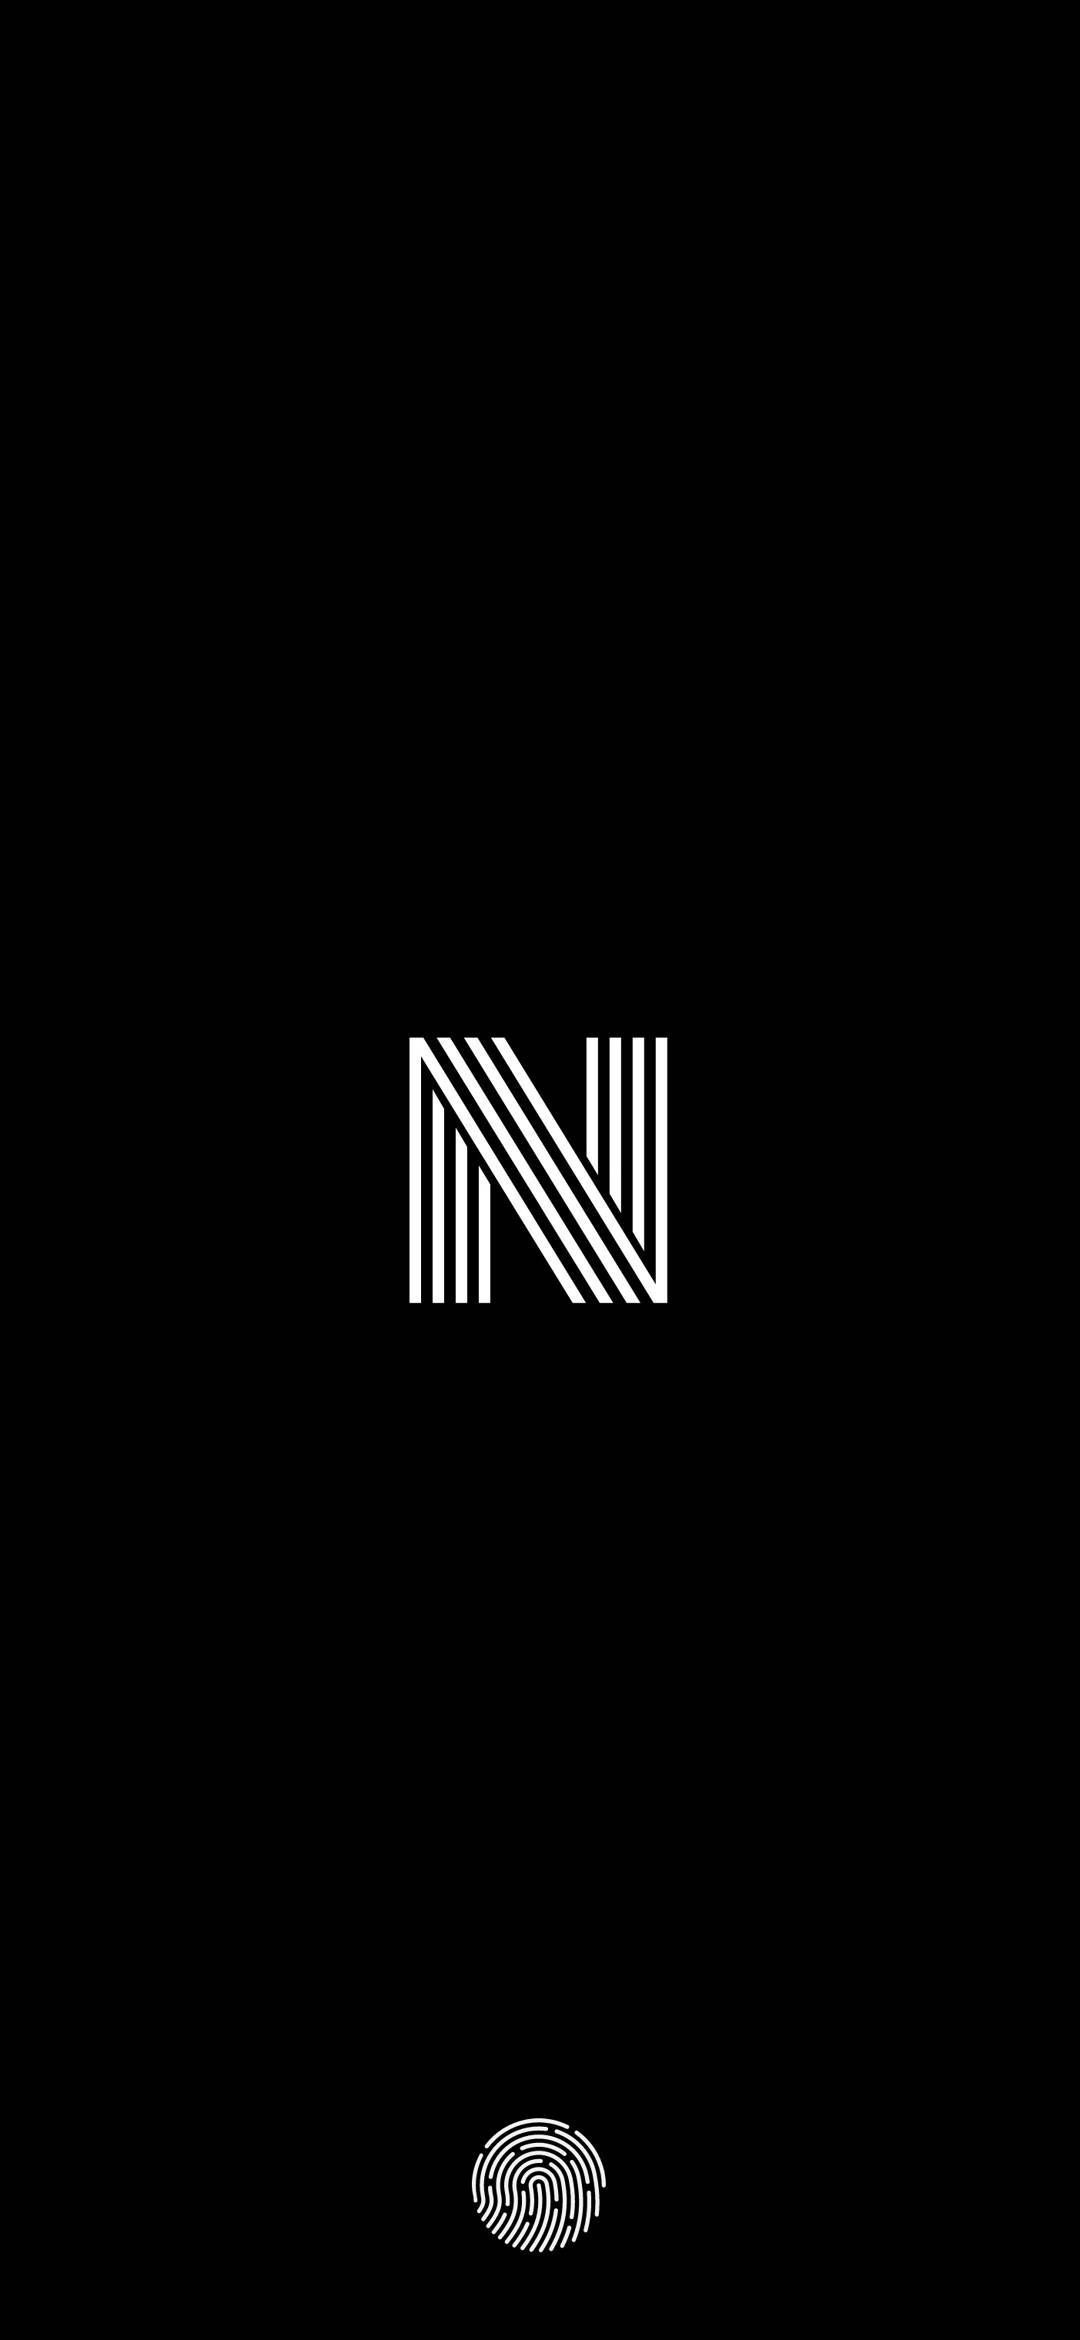 S n letter logo design on black color background Vector Image